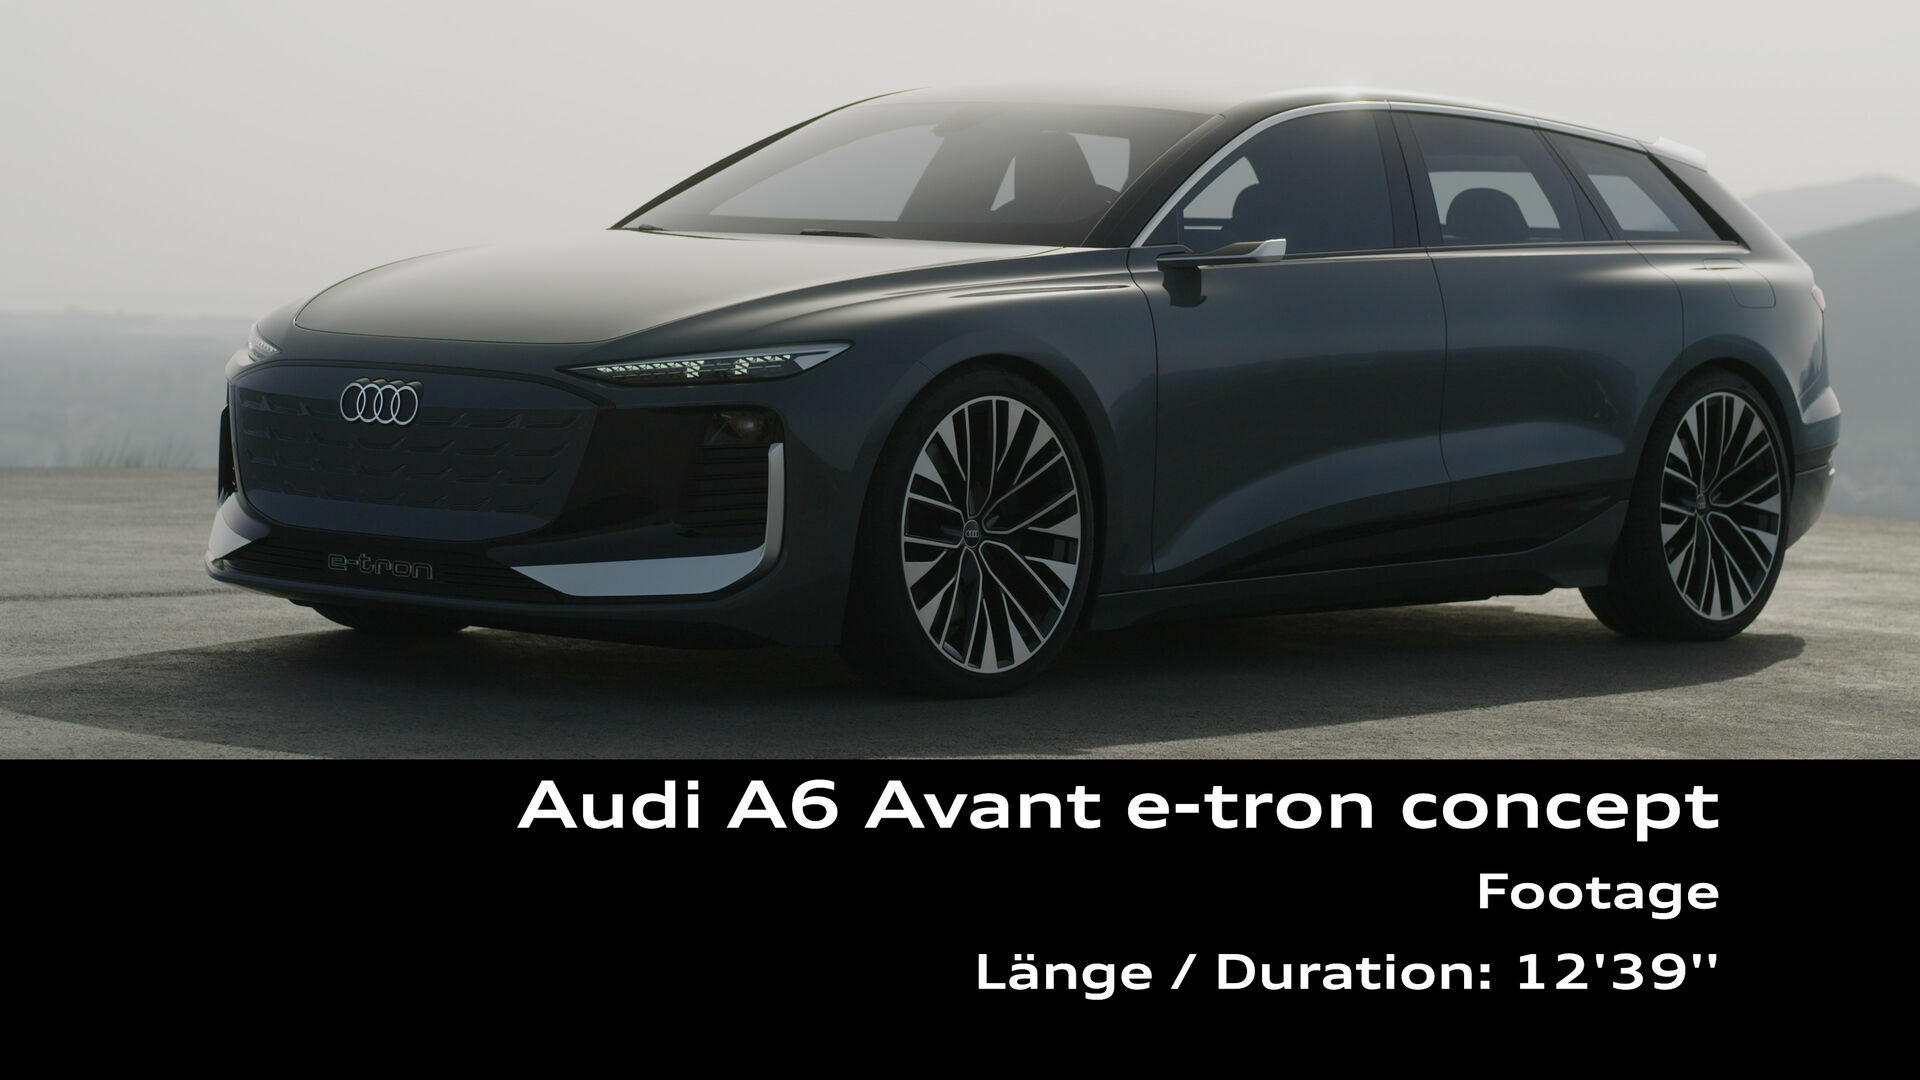 Footage: Audi A6 Avant e-tron concept (Spain)